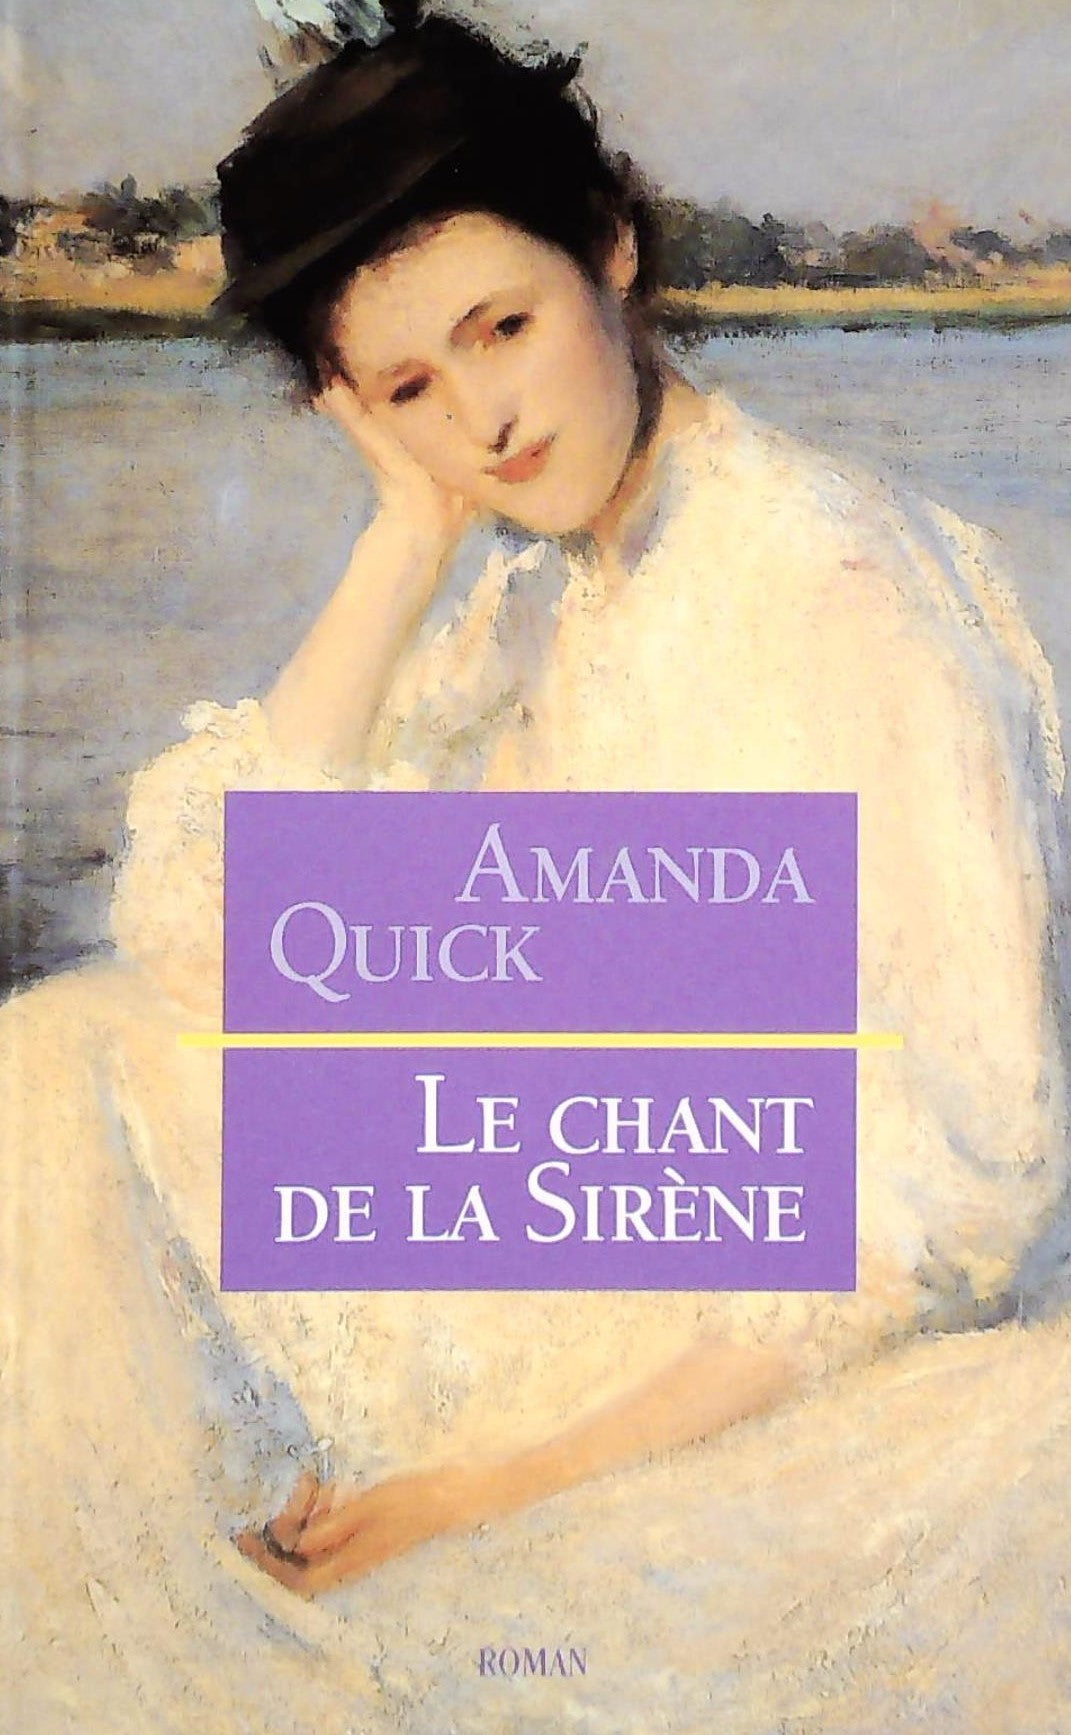 Livre ISBN 2744107824 Le chant de la sirène (Amanda Quick)